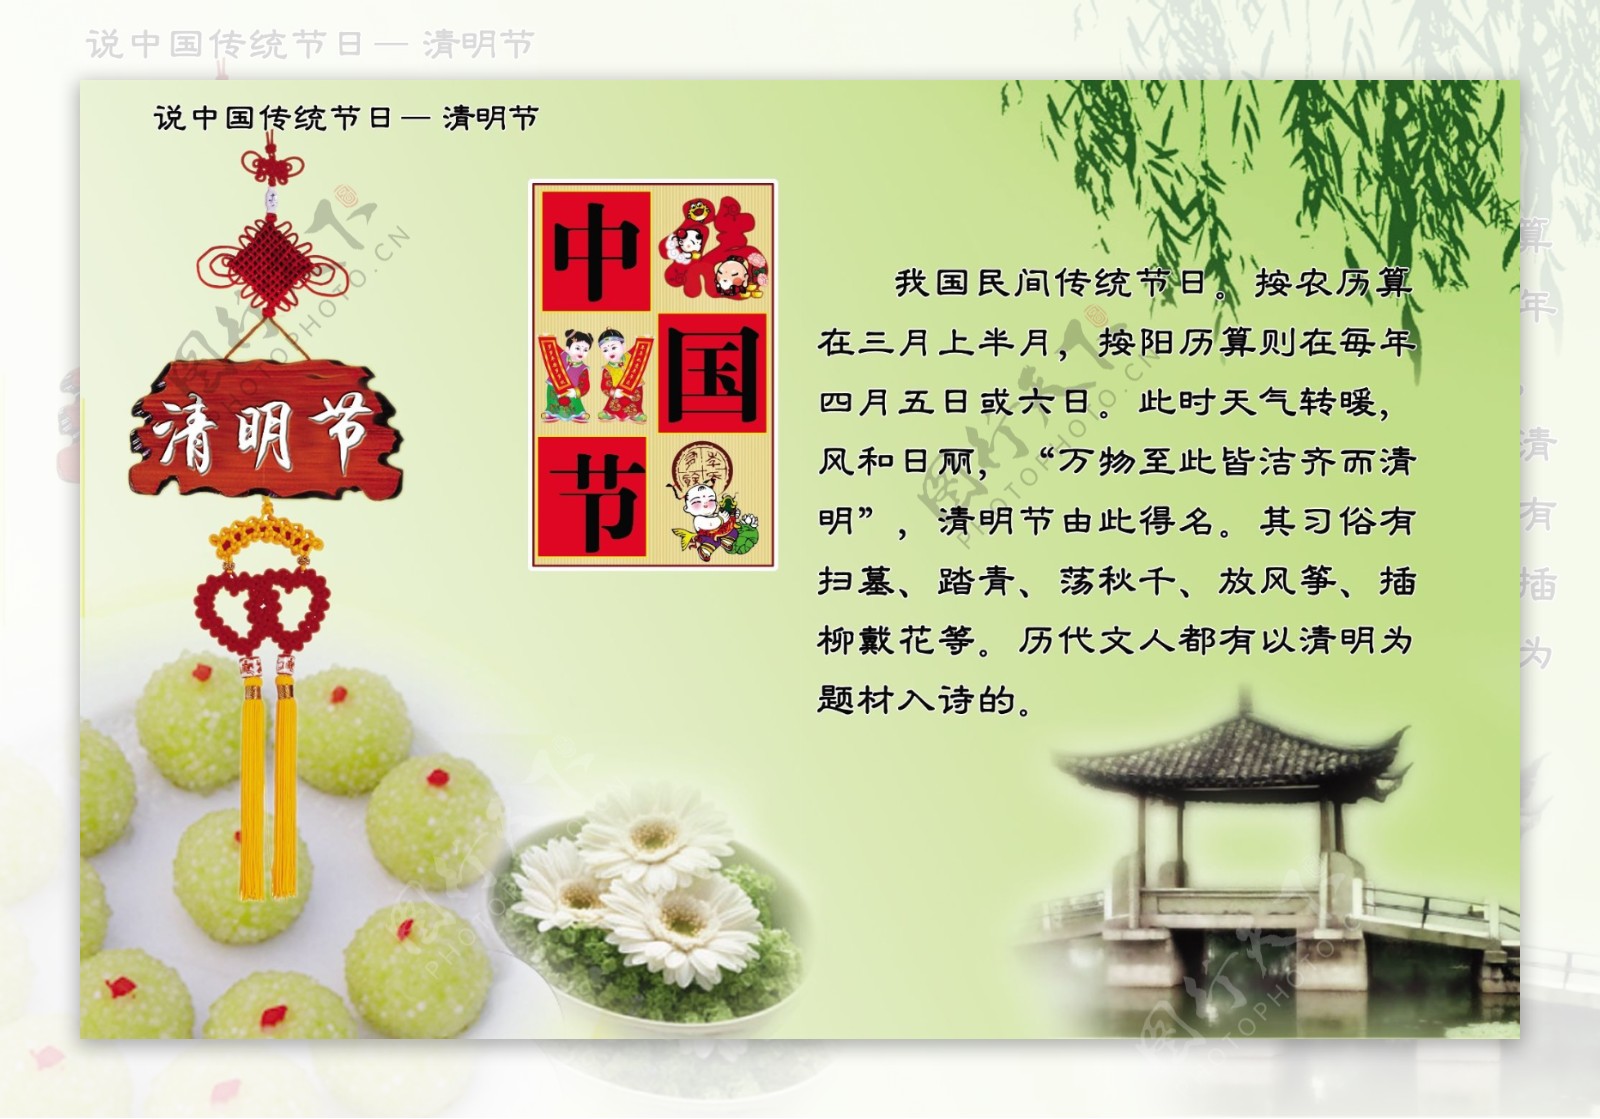 中国传统节日清明节图片